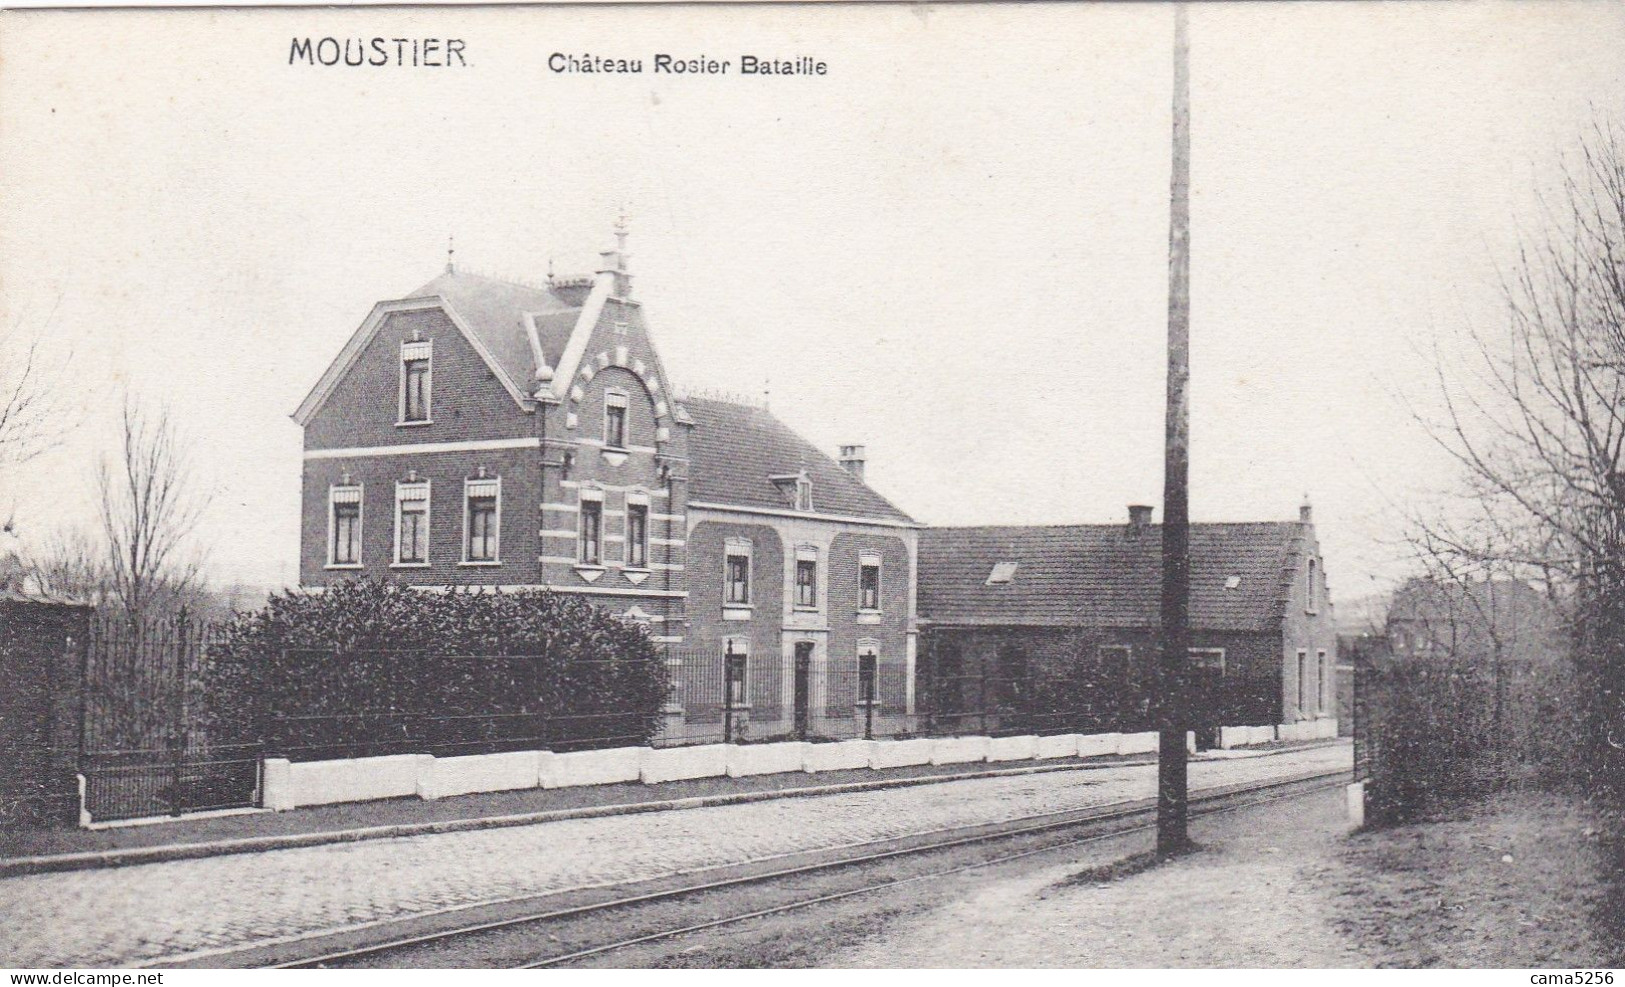 Chateau Rosier Bataille à Moustier - Frasnes-lez-Anvaing